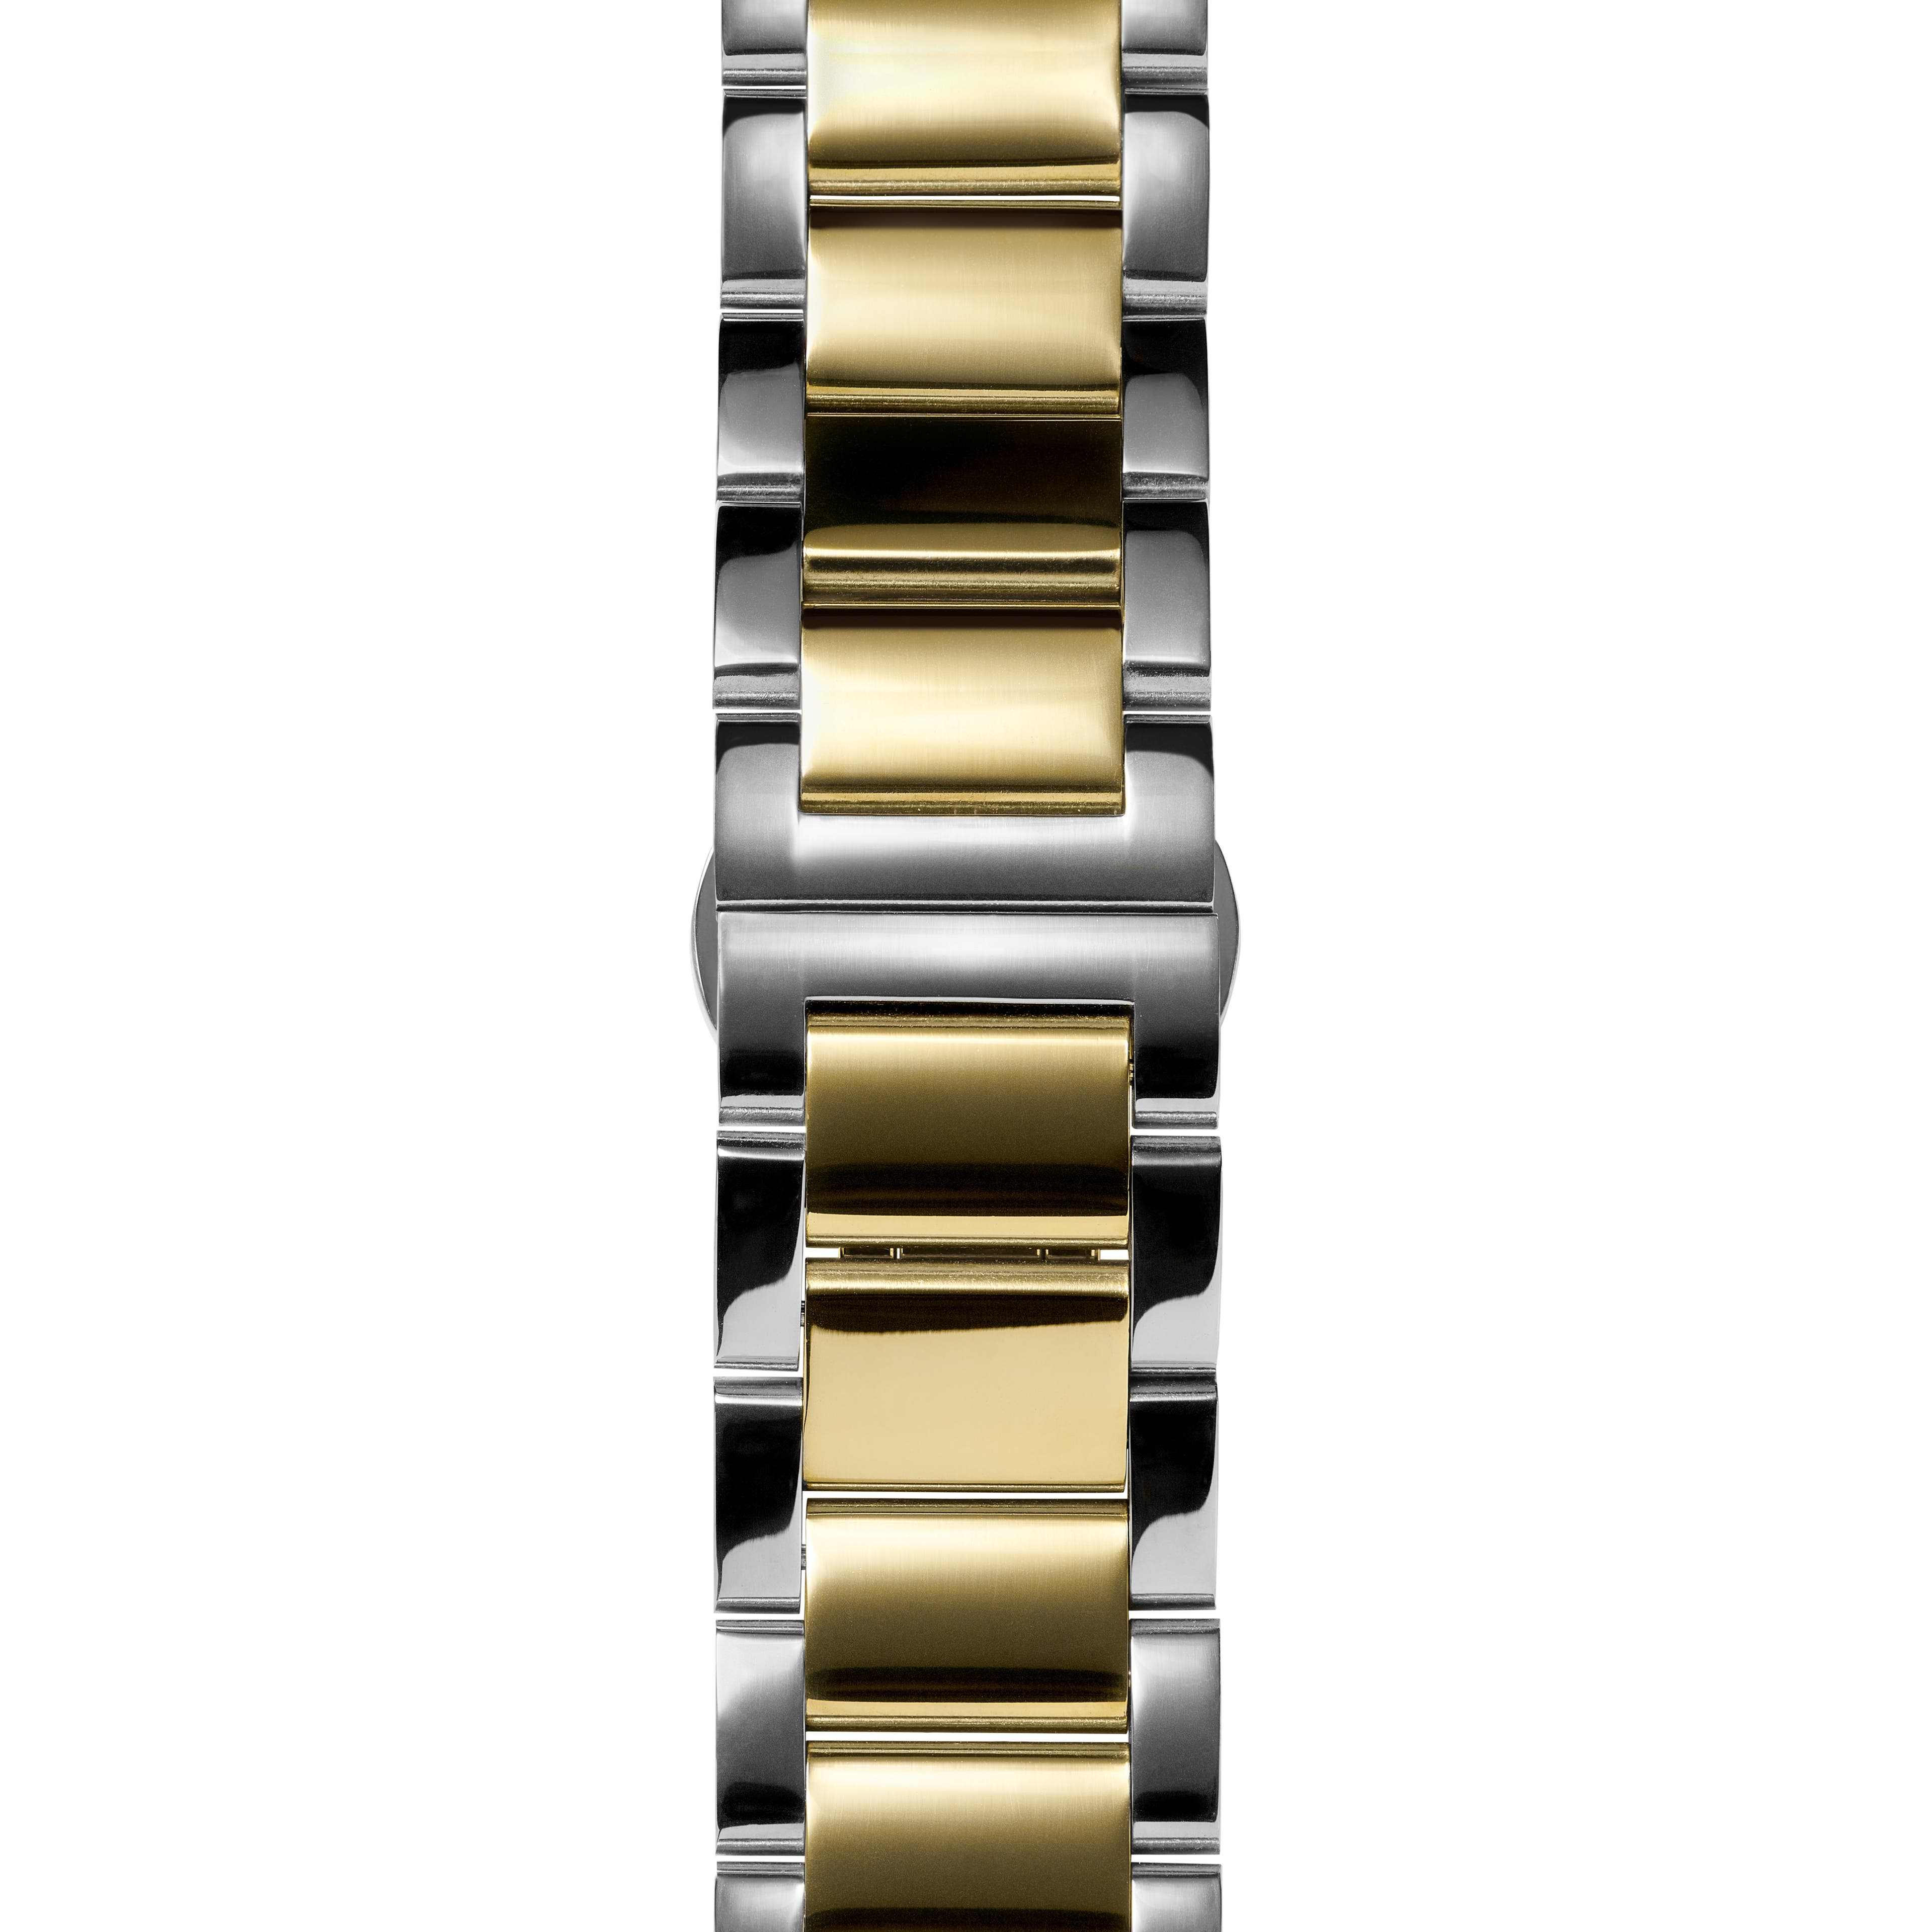 Srebrzysto-złocista 18 mm bransoleta do zegarka ze stali nierdzewnej – szybka w wymianie